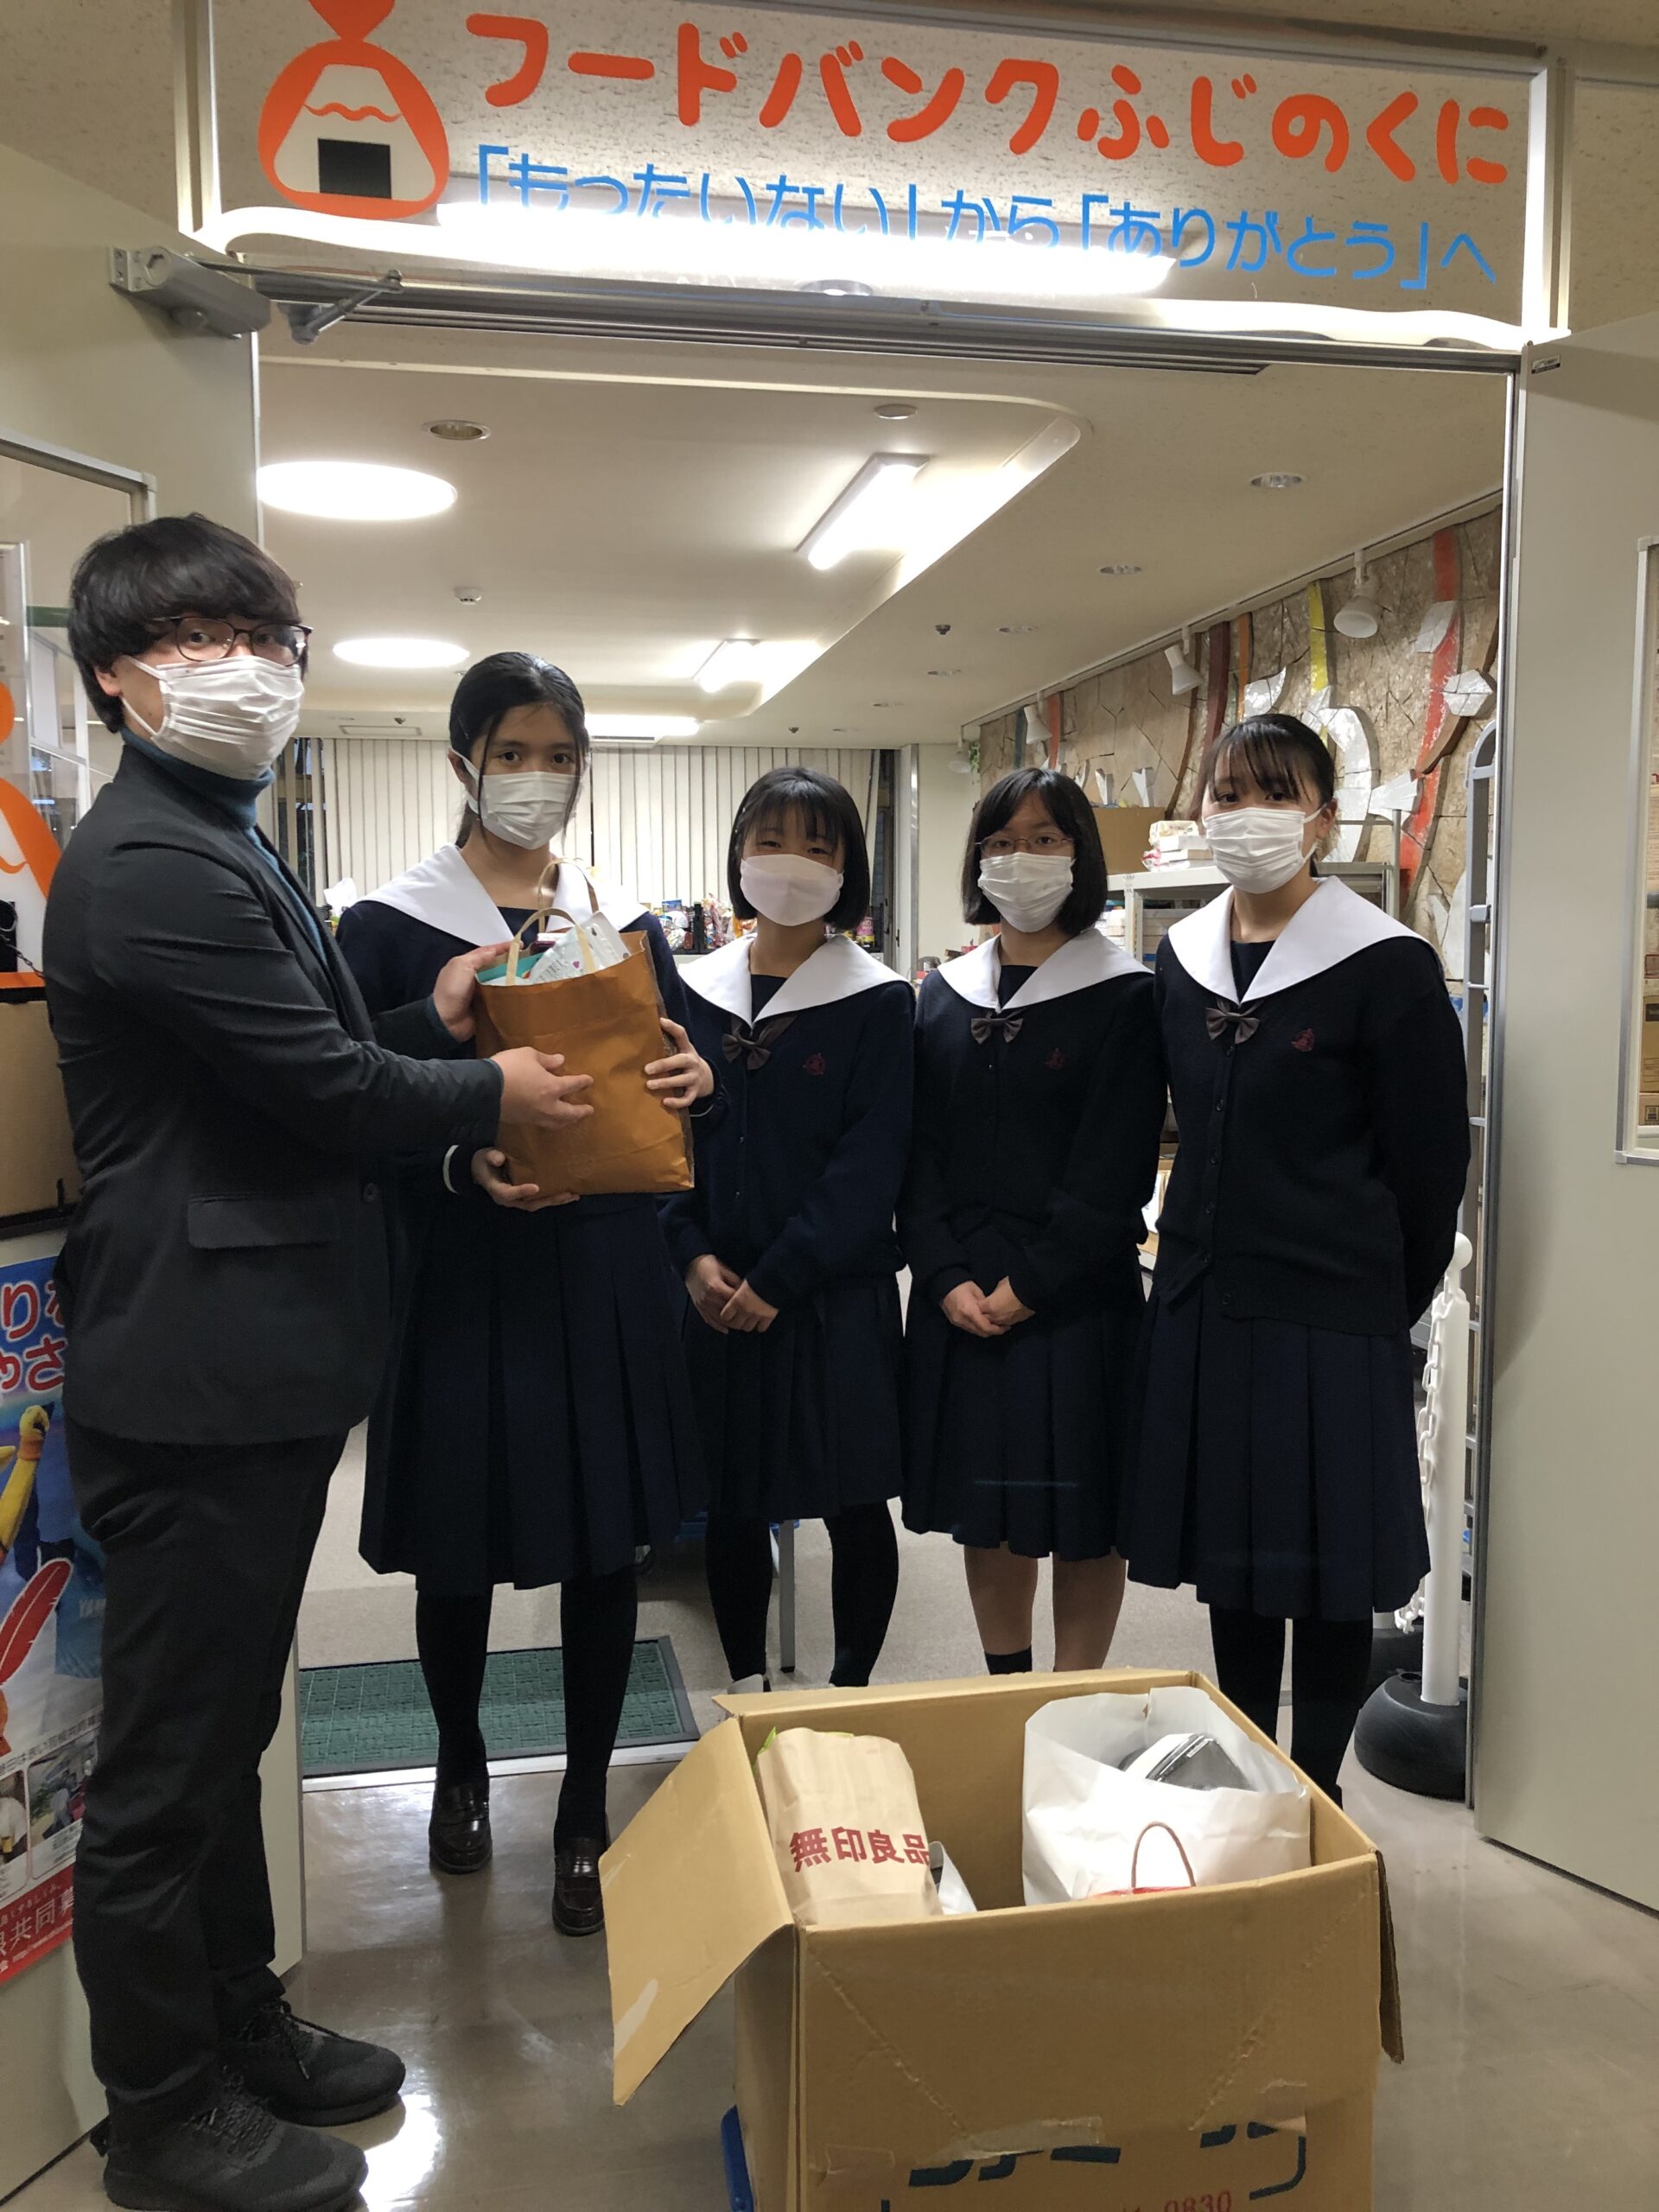 静岡市立高等学校の4人の生徒さんから食品の寄贈をいただきました。